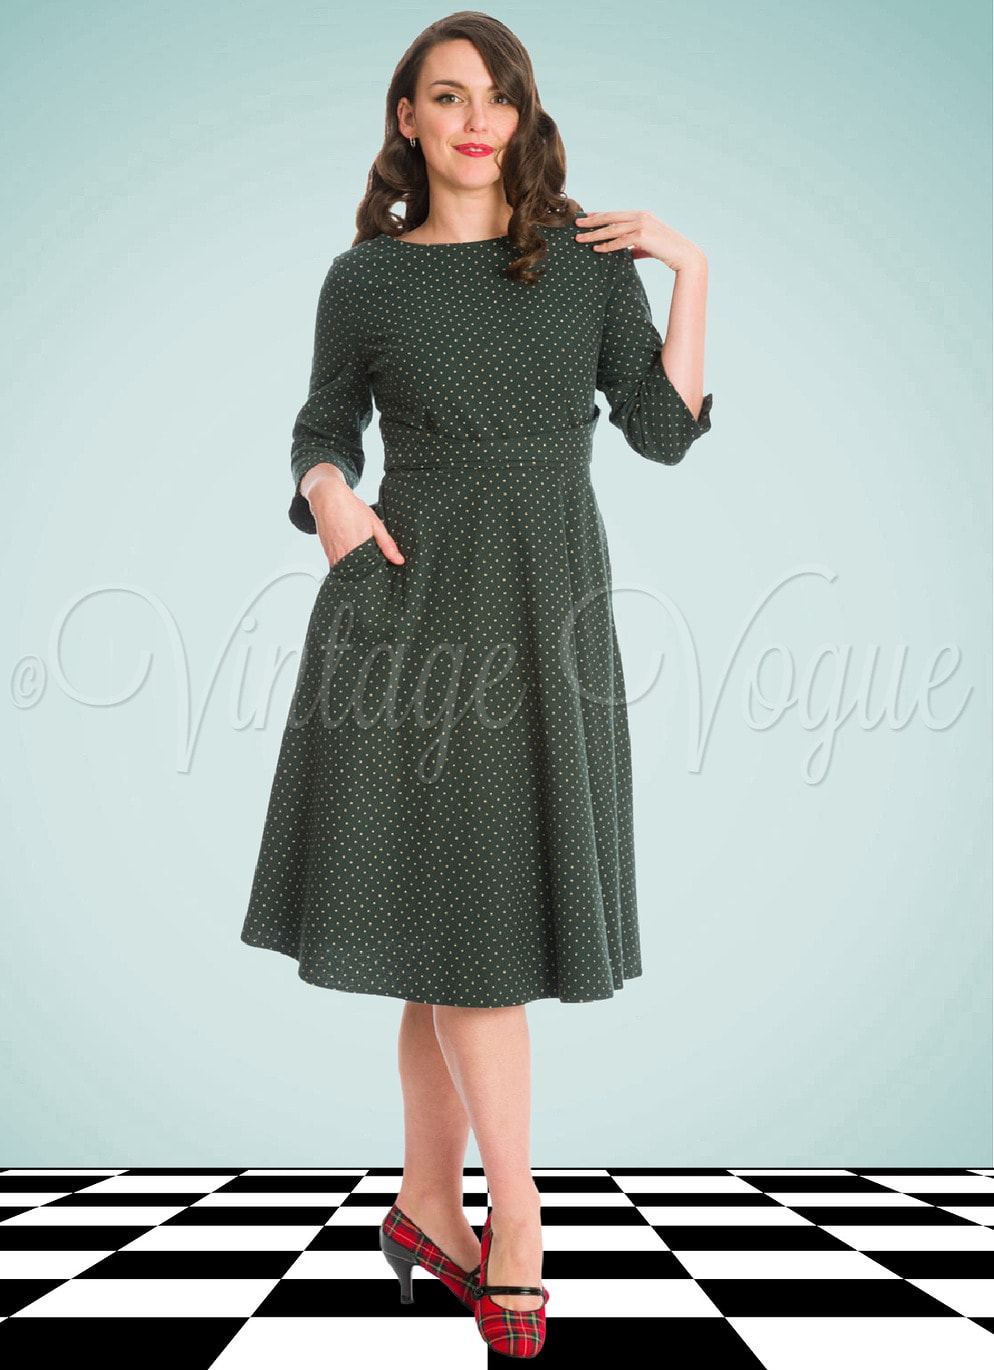 Banned Retro 50's Vintage Polka Punkte Swing Winter Kleid Cosy Spot Dress in Grün 50er Jahre Petticoat Langarm Damenkleid Punkte Polka Dots gepunktet tupfen